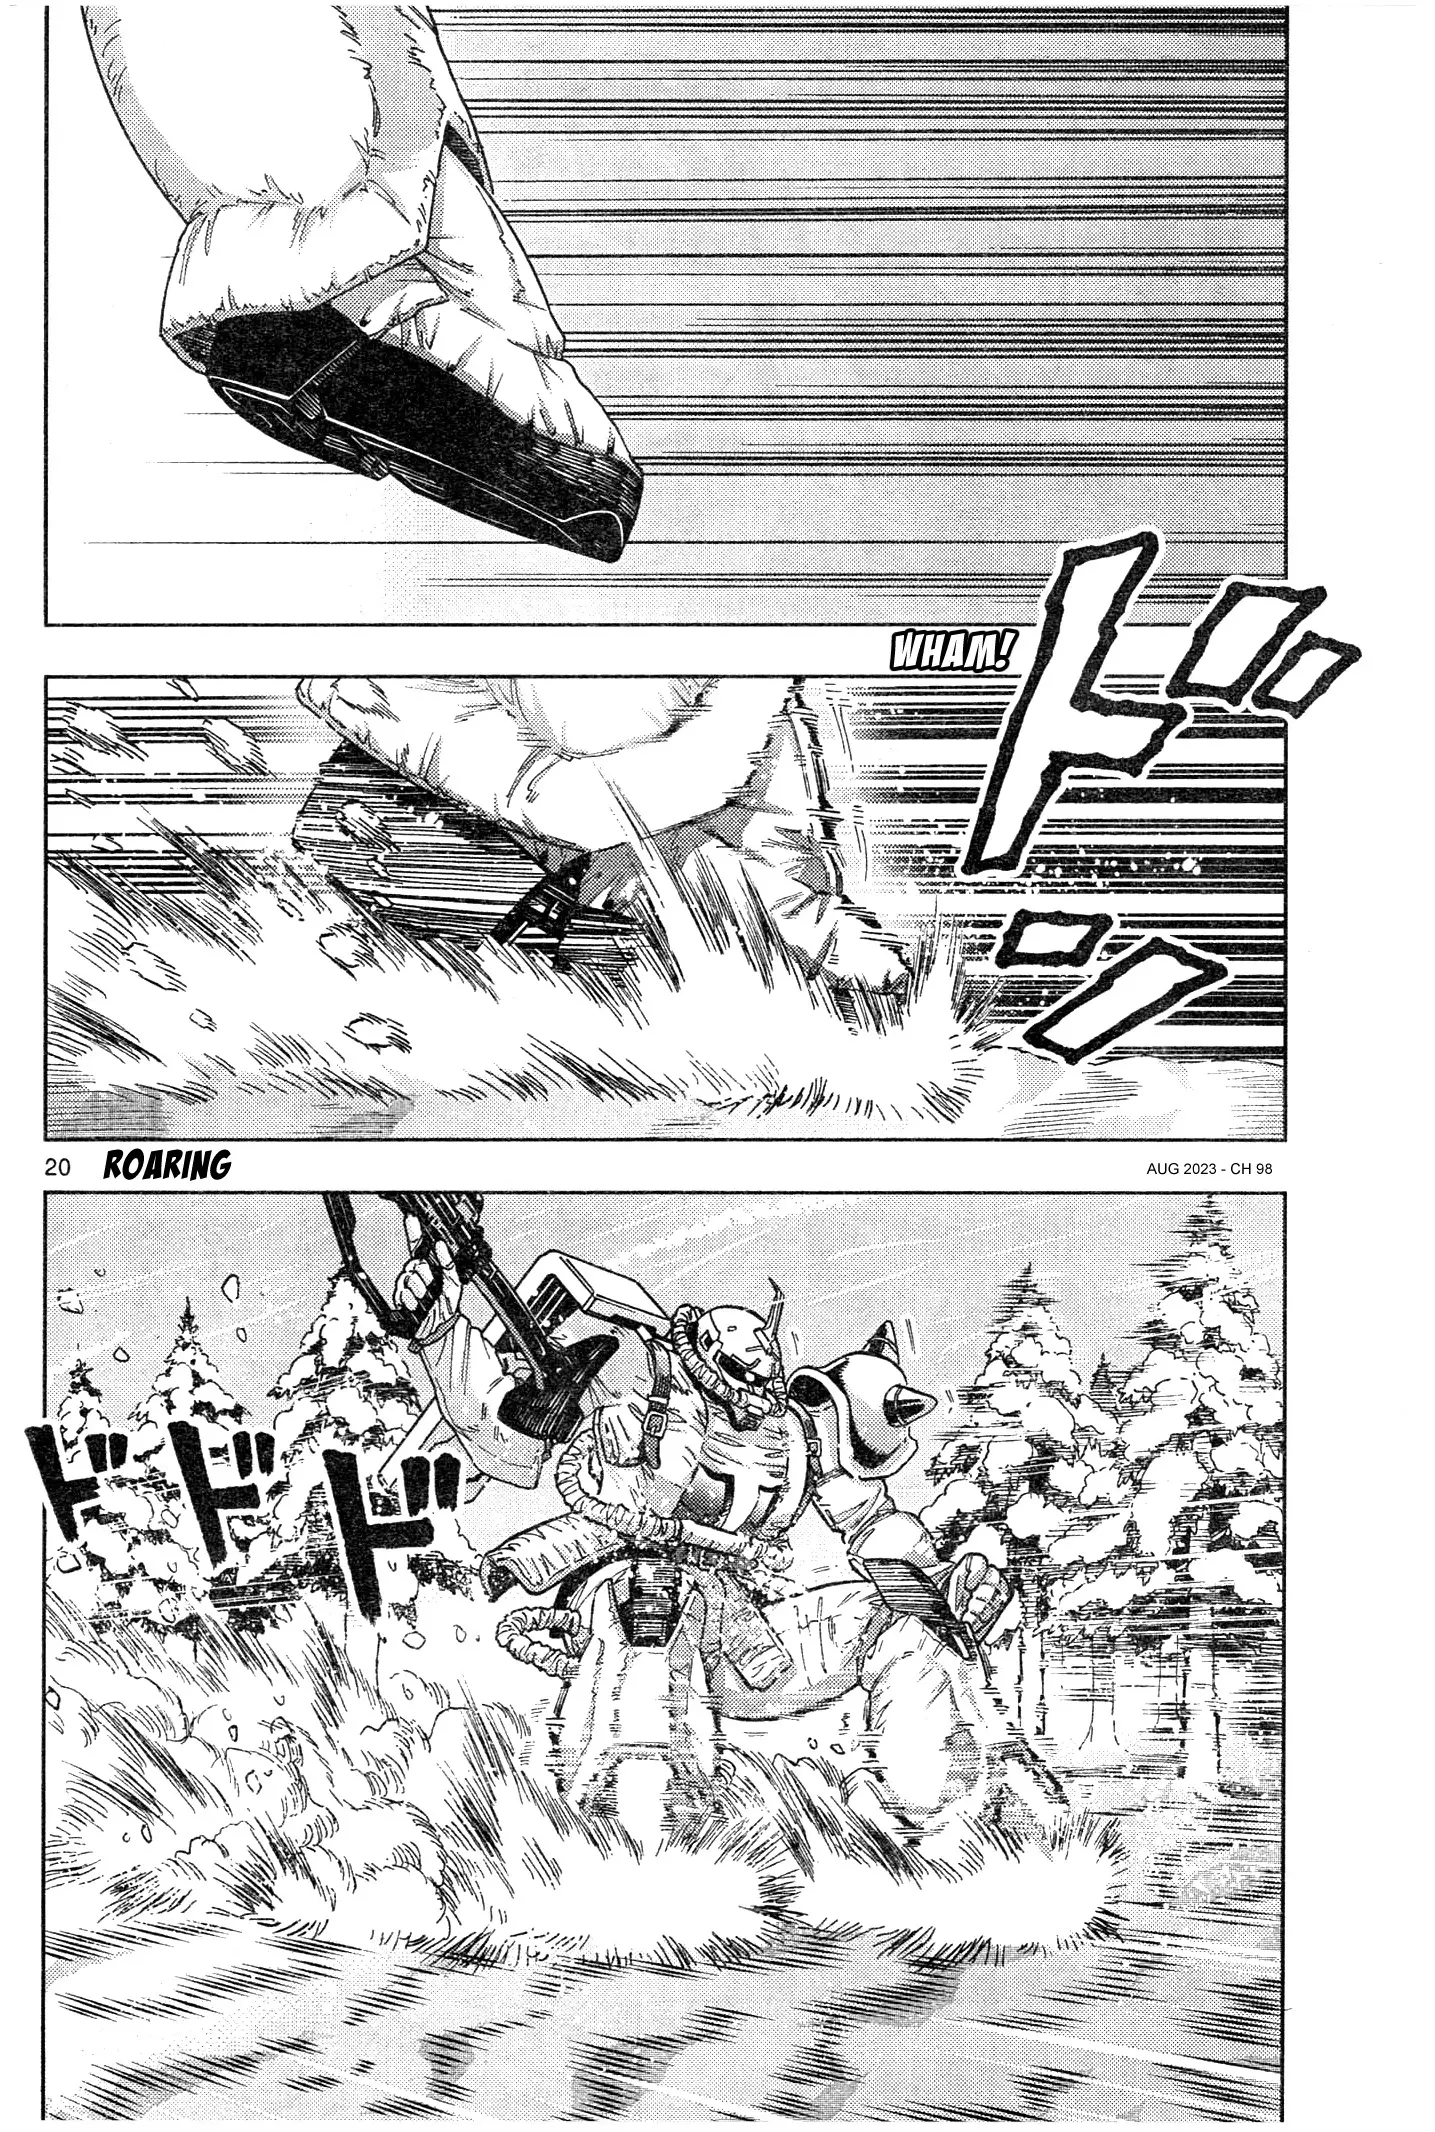 Mobile Suit Gundam Aggressor - 98 page 20-c4df02ad